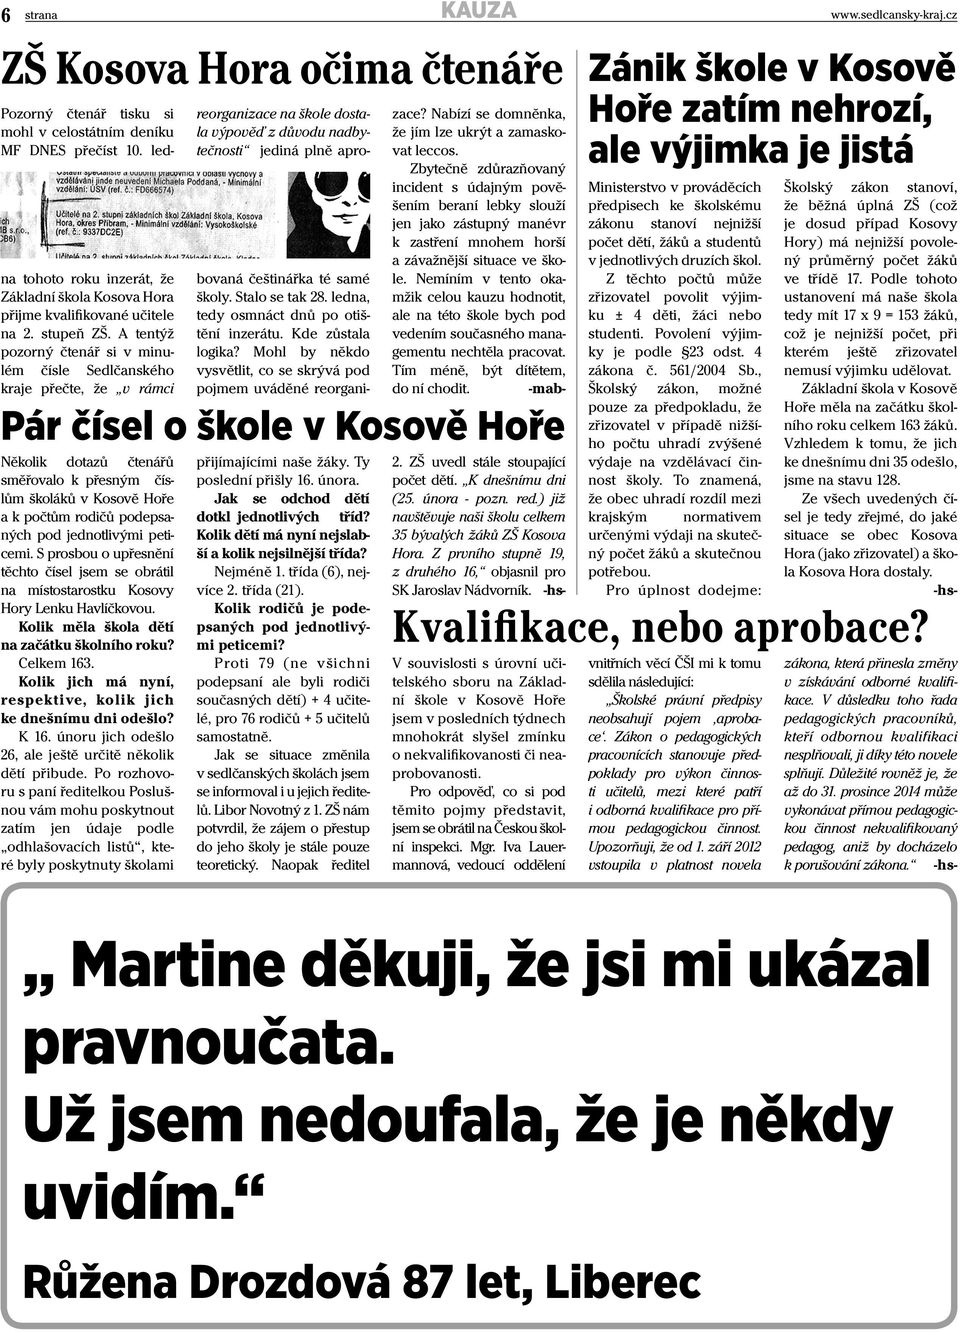 A tentýž pozorný čtenář si v minulém čísle Sedlčanského kraje přečte, že v rámci Několik dotazů čtenářů směřovalo k přesným číslům školáků v Kosově Hoře a k počtům rodičů podepsaných pod jednotlivými